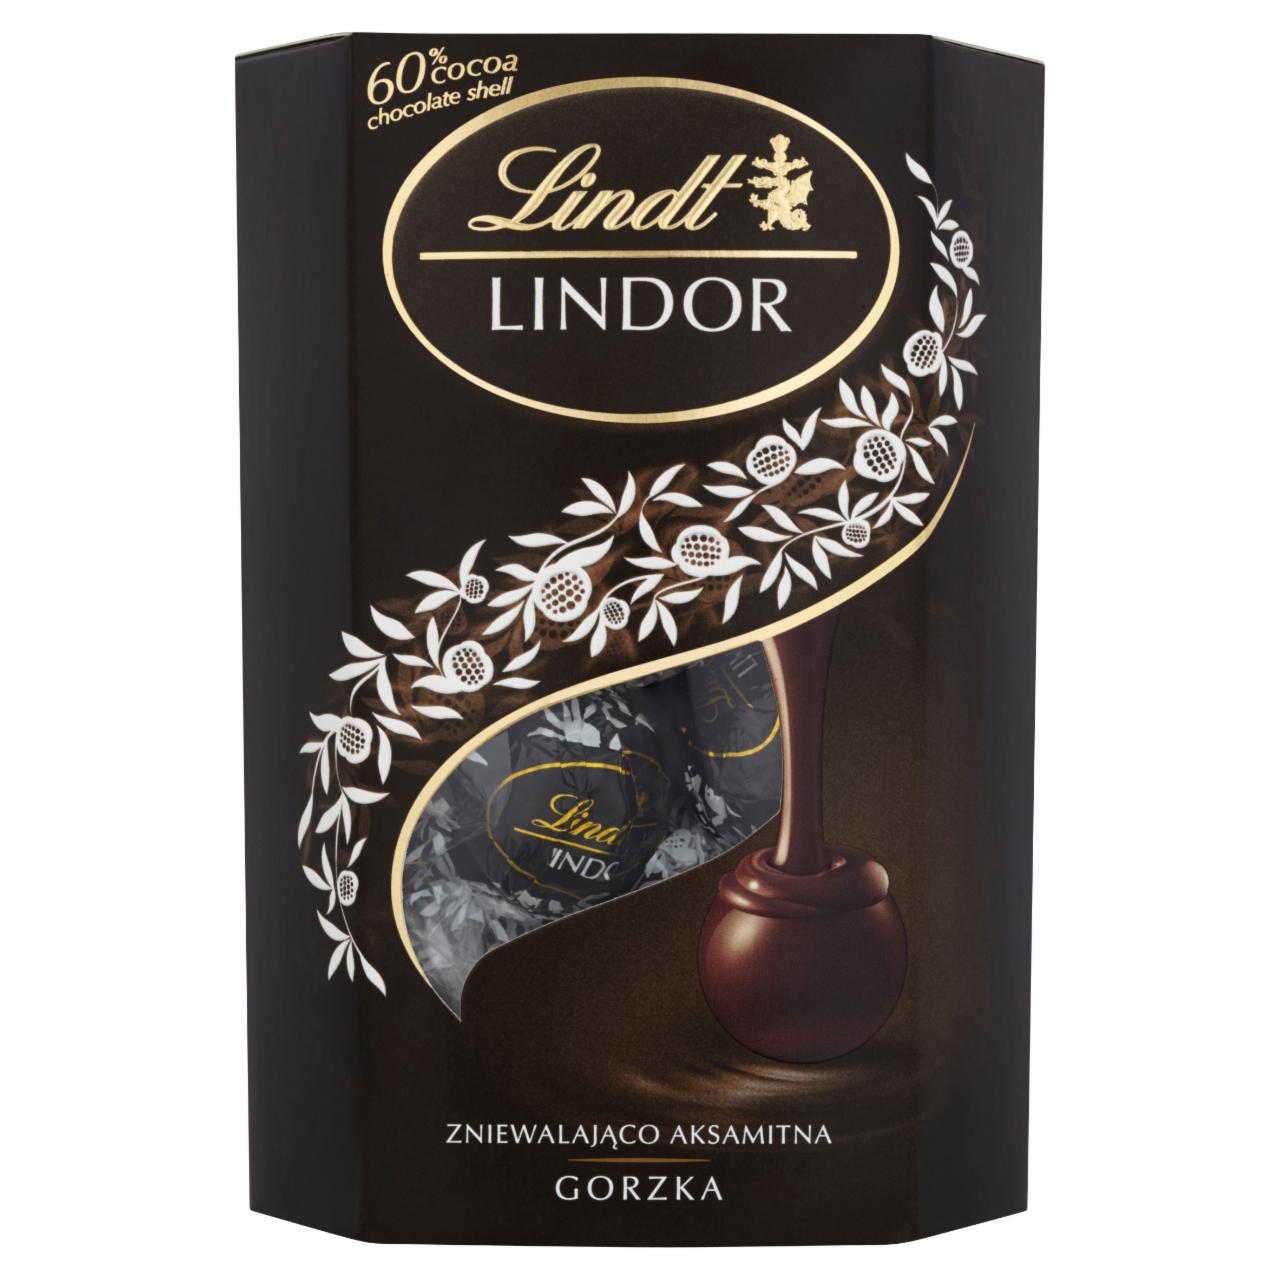 Zdjęcia - Lindt Lindor Gorzka Pralinki z czekolady gorzkiej z nadzieniem 170 g